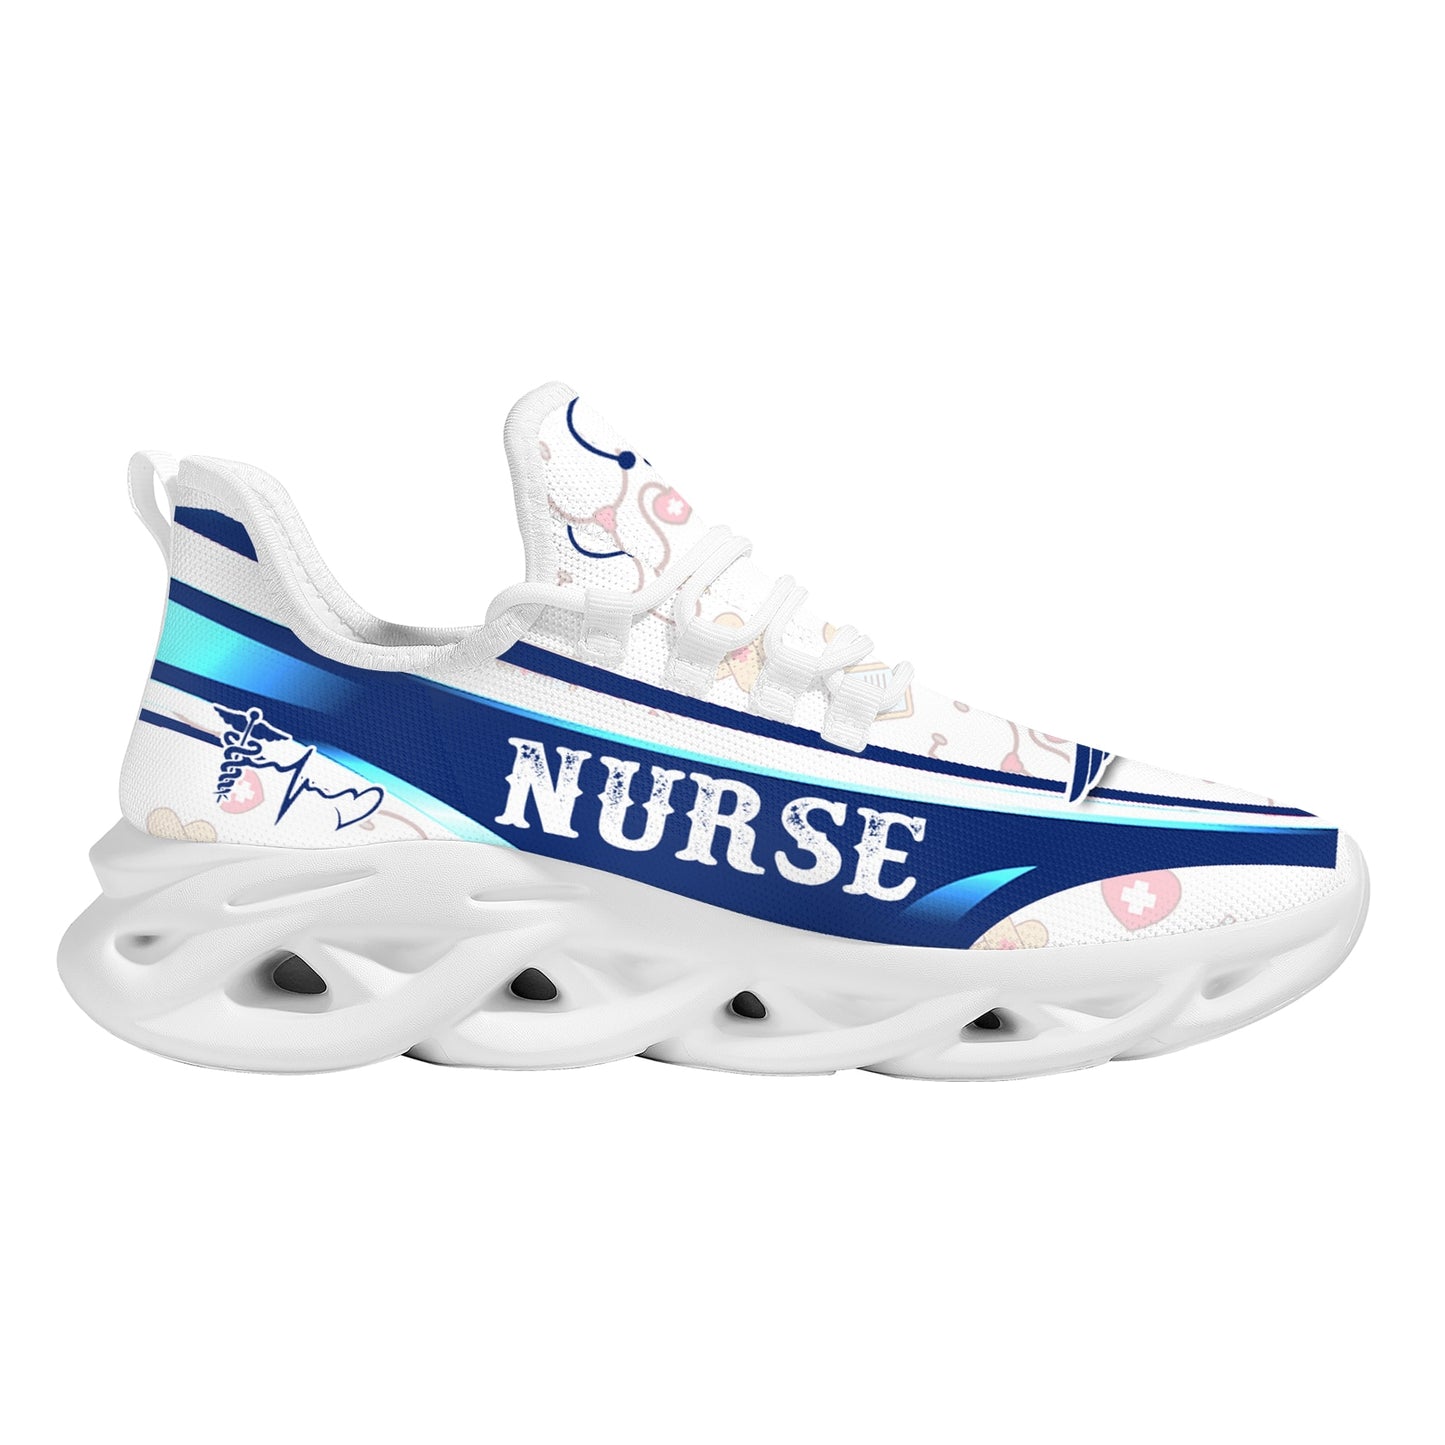 Zapatos blancos con estampado de enfermera para mujer, zapatos de plataforma tejidos de verano, zapatillas con cordones ligeras y transpirables, zapatos médicos